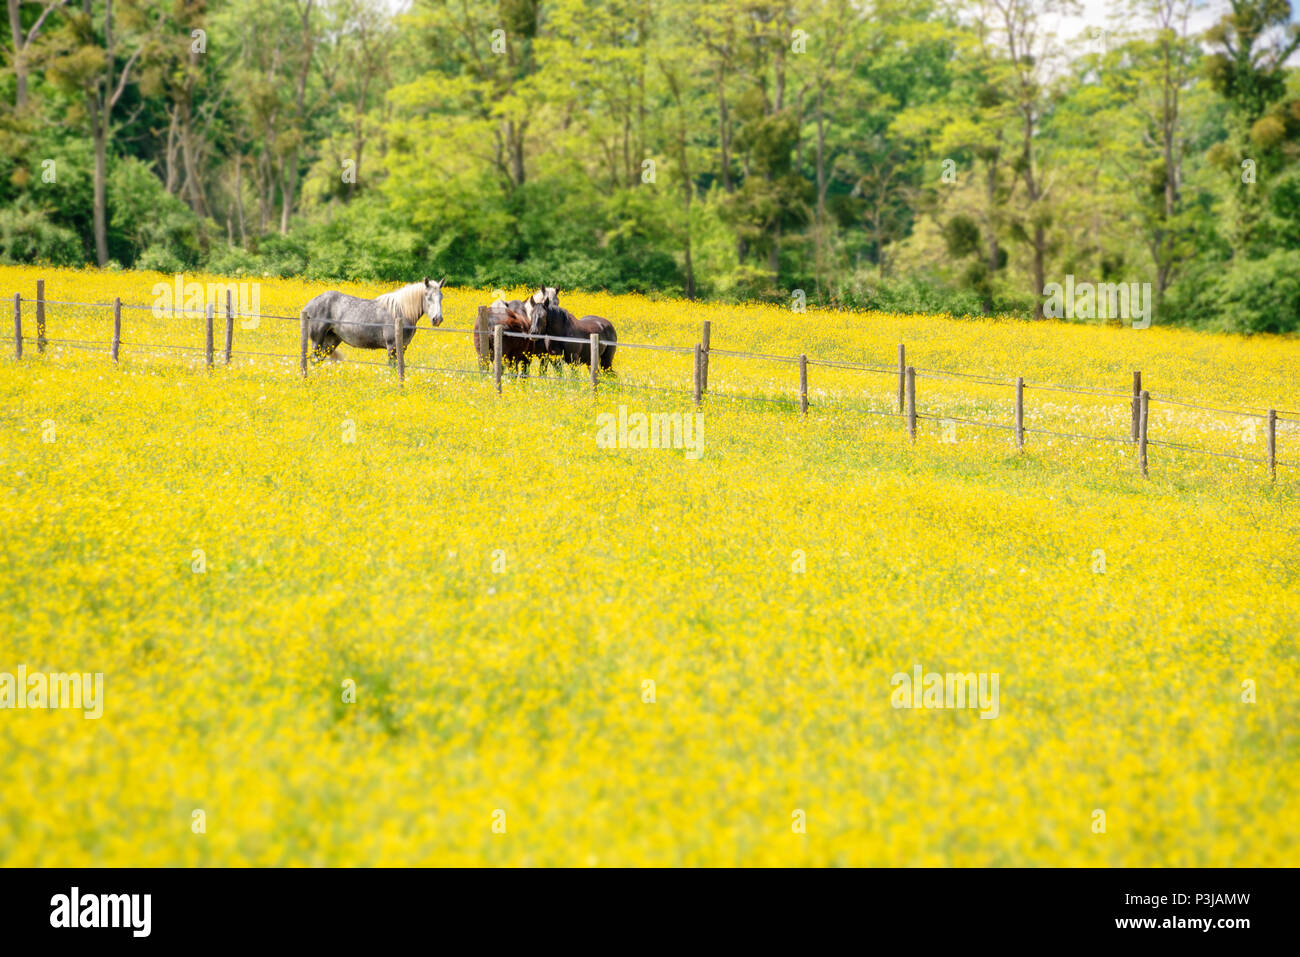 Percherons caballos en un campo de flores amarillas en la provincia de Perche, Francia Foto de stock